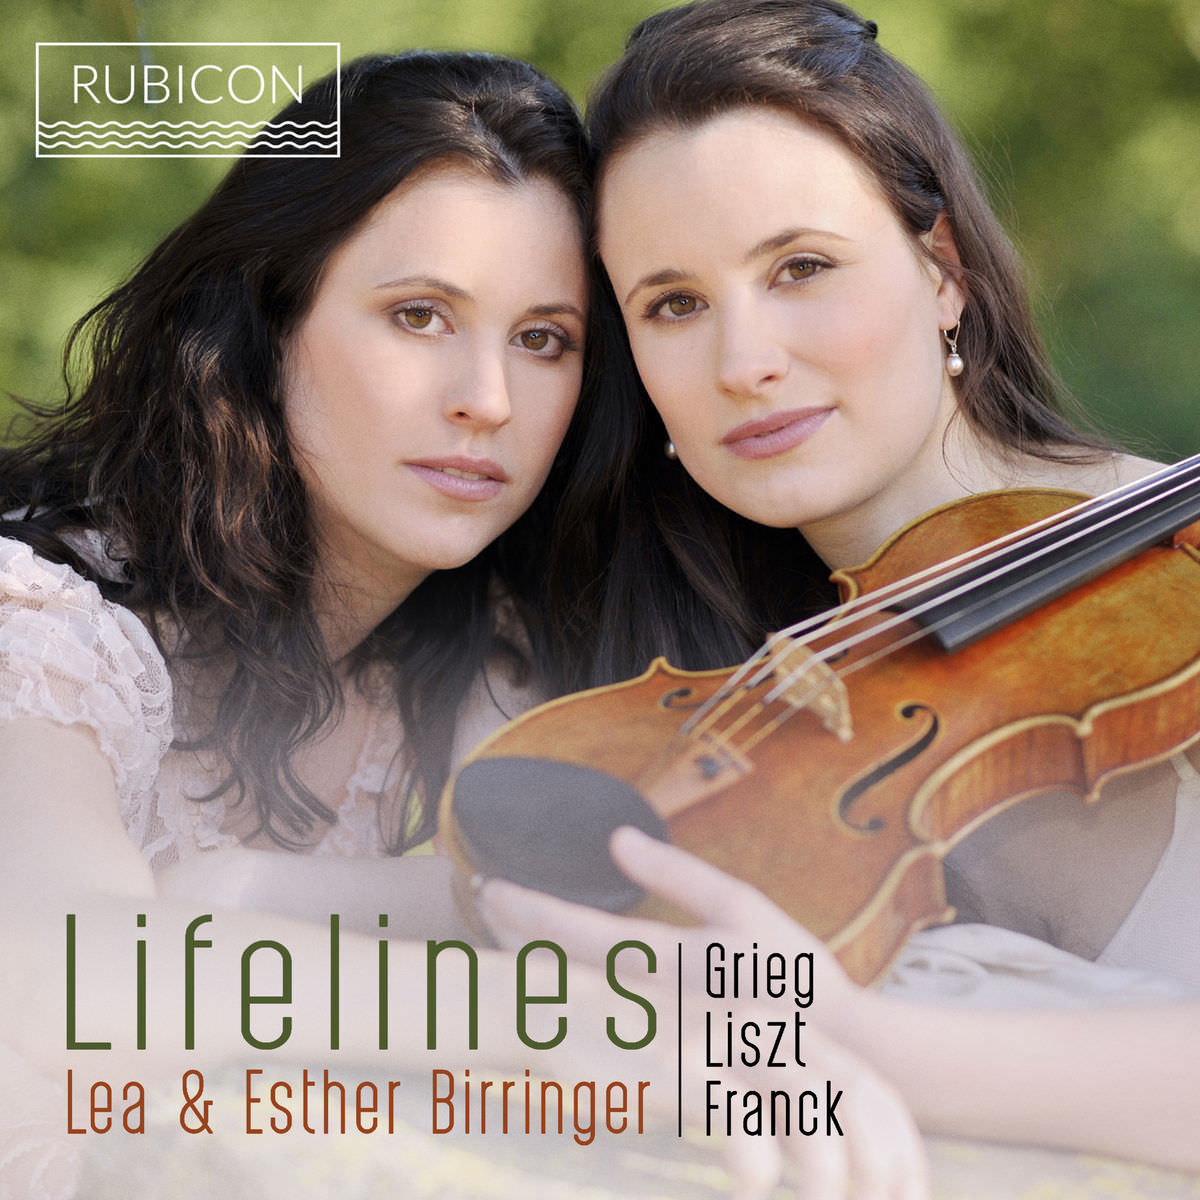 Lea Birringer & Esther Birringer – Grieg, Liszt & Franck: Lifelines (2018) [FLAC 24bit/48kHz]